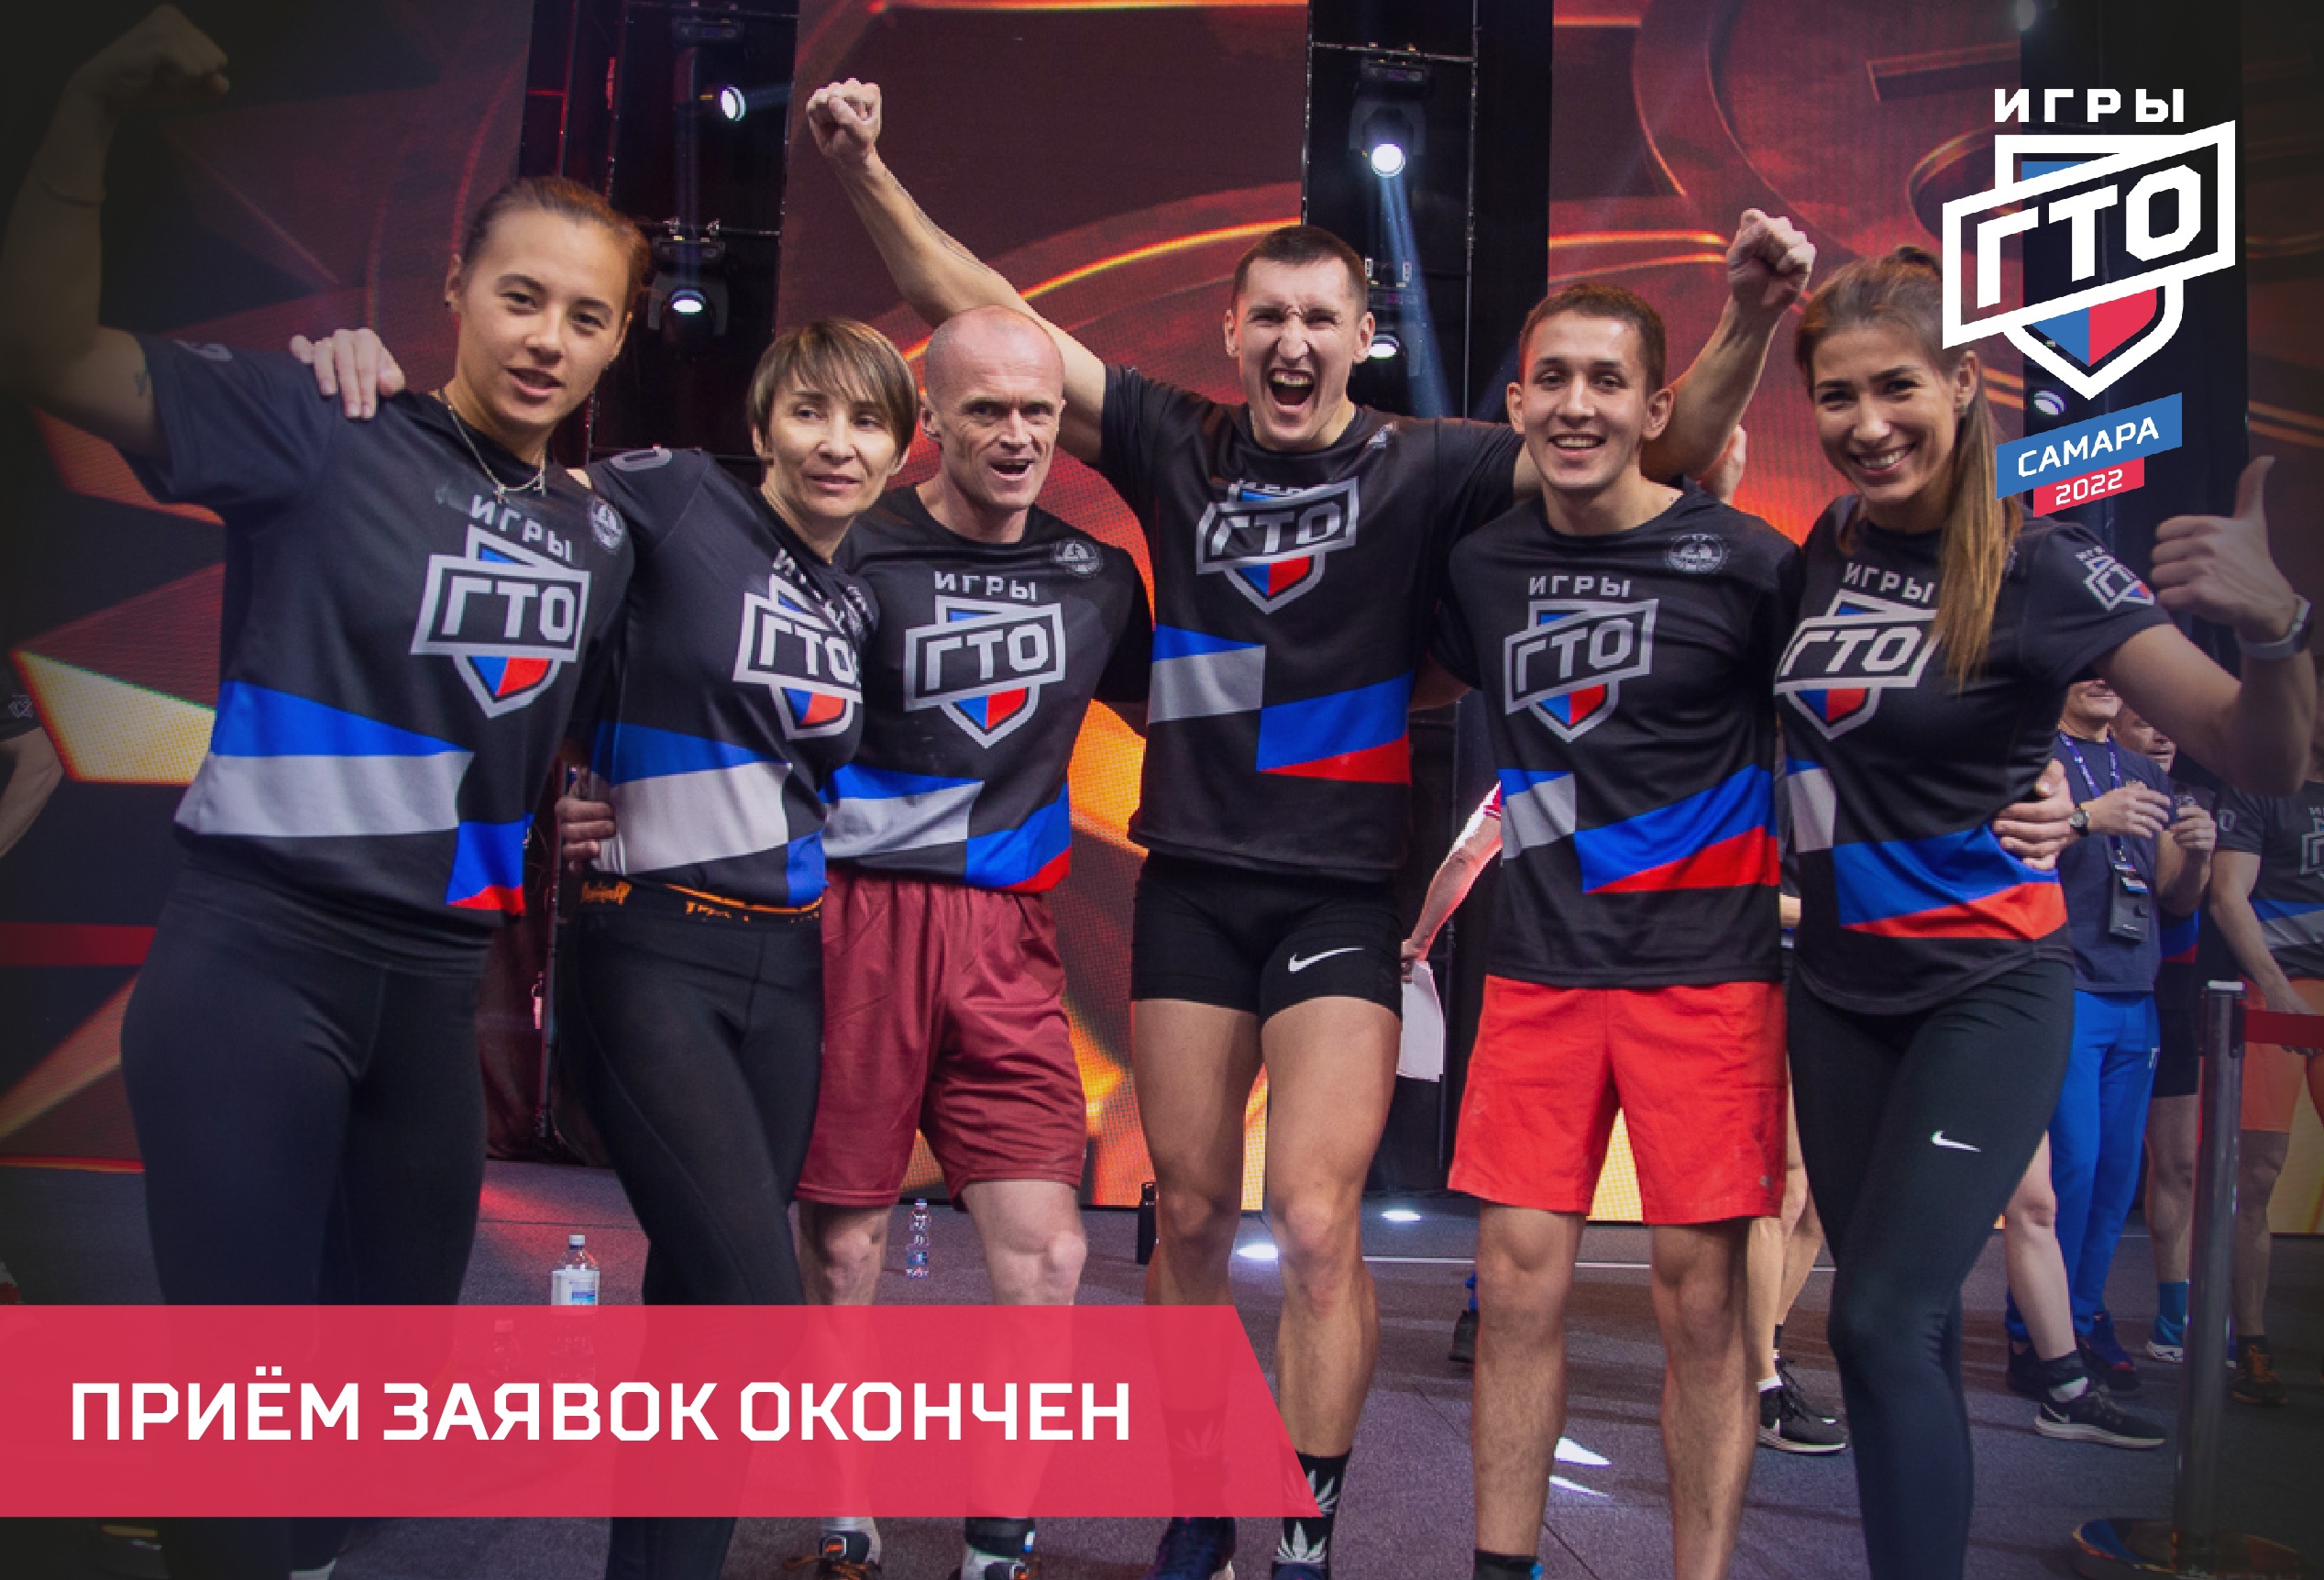 Прием заявок на участие в III Всероссийских Играх ГТО завершен.